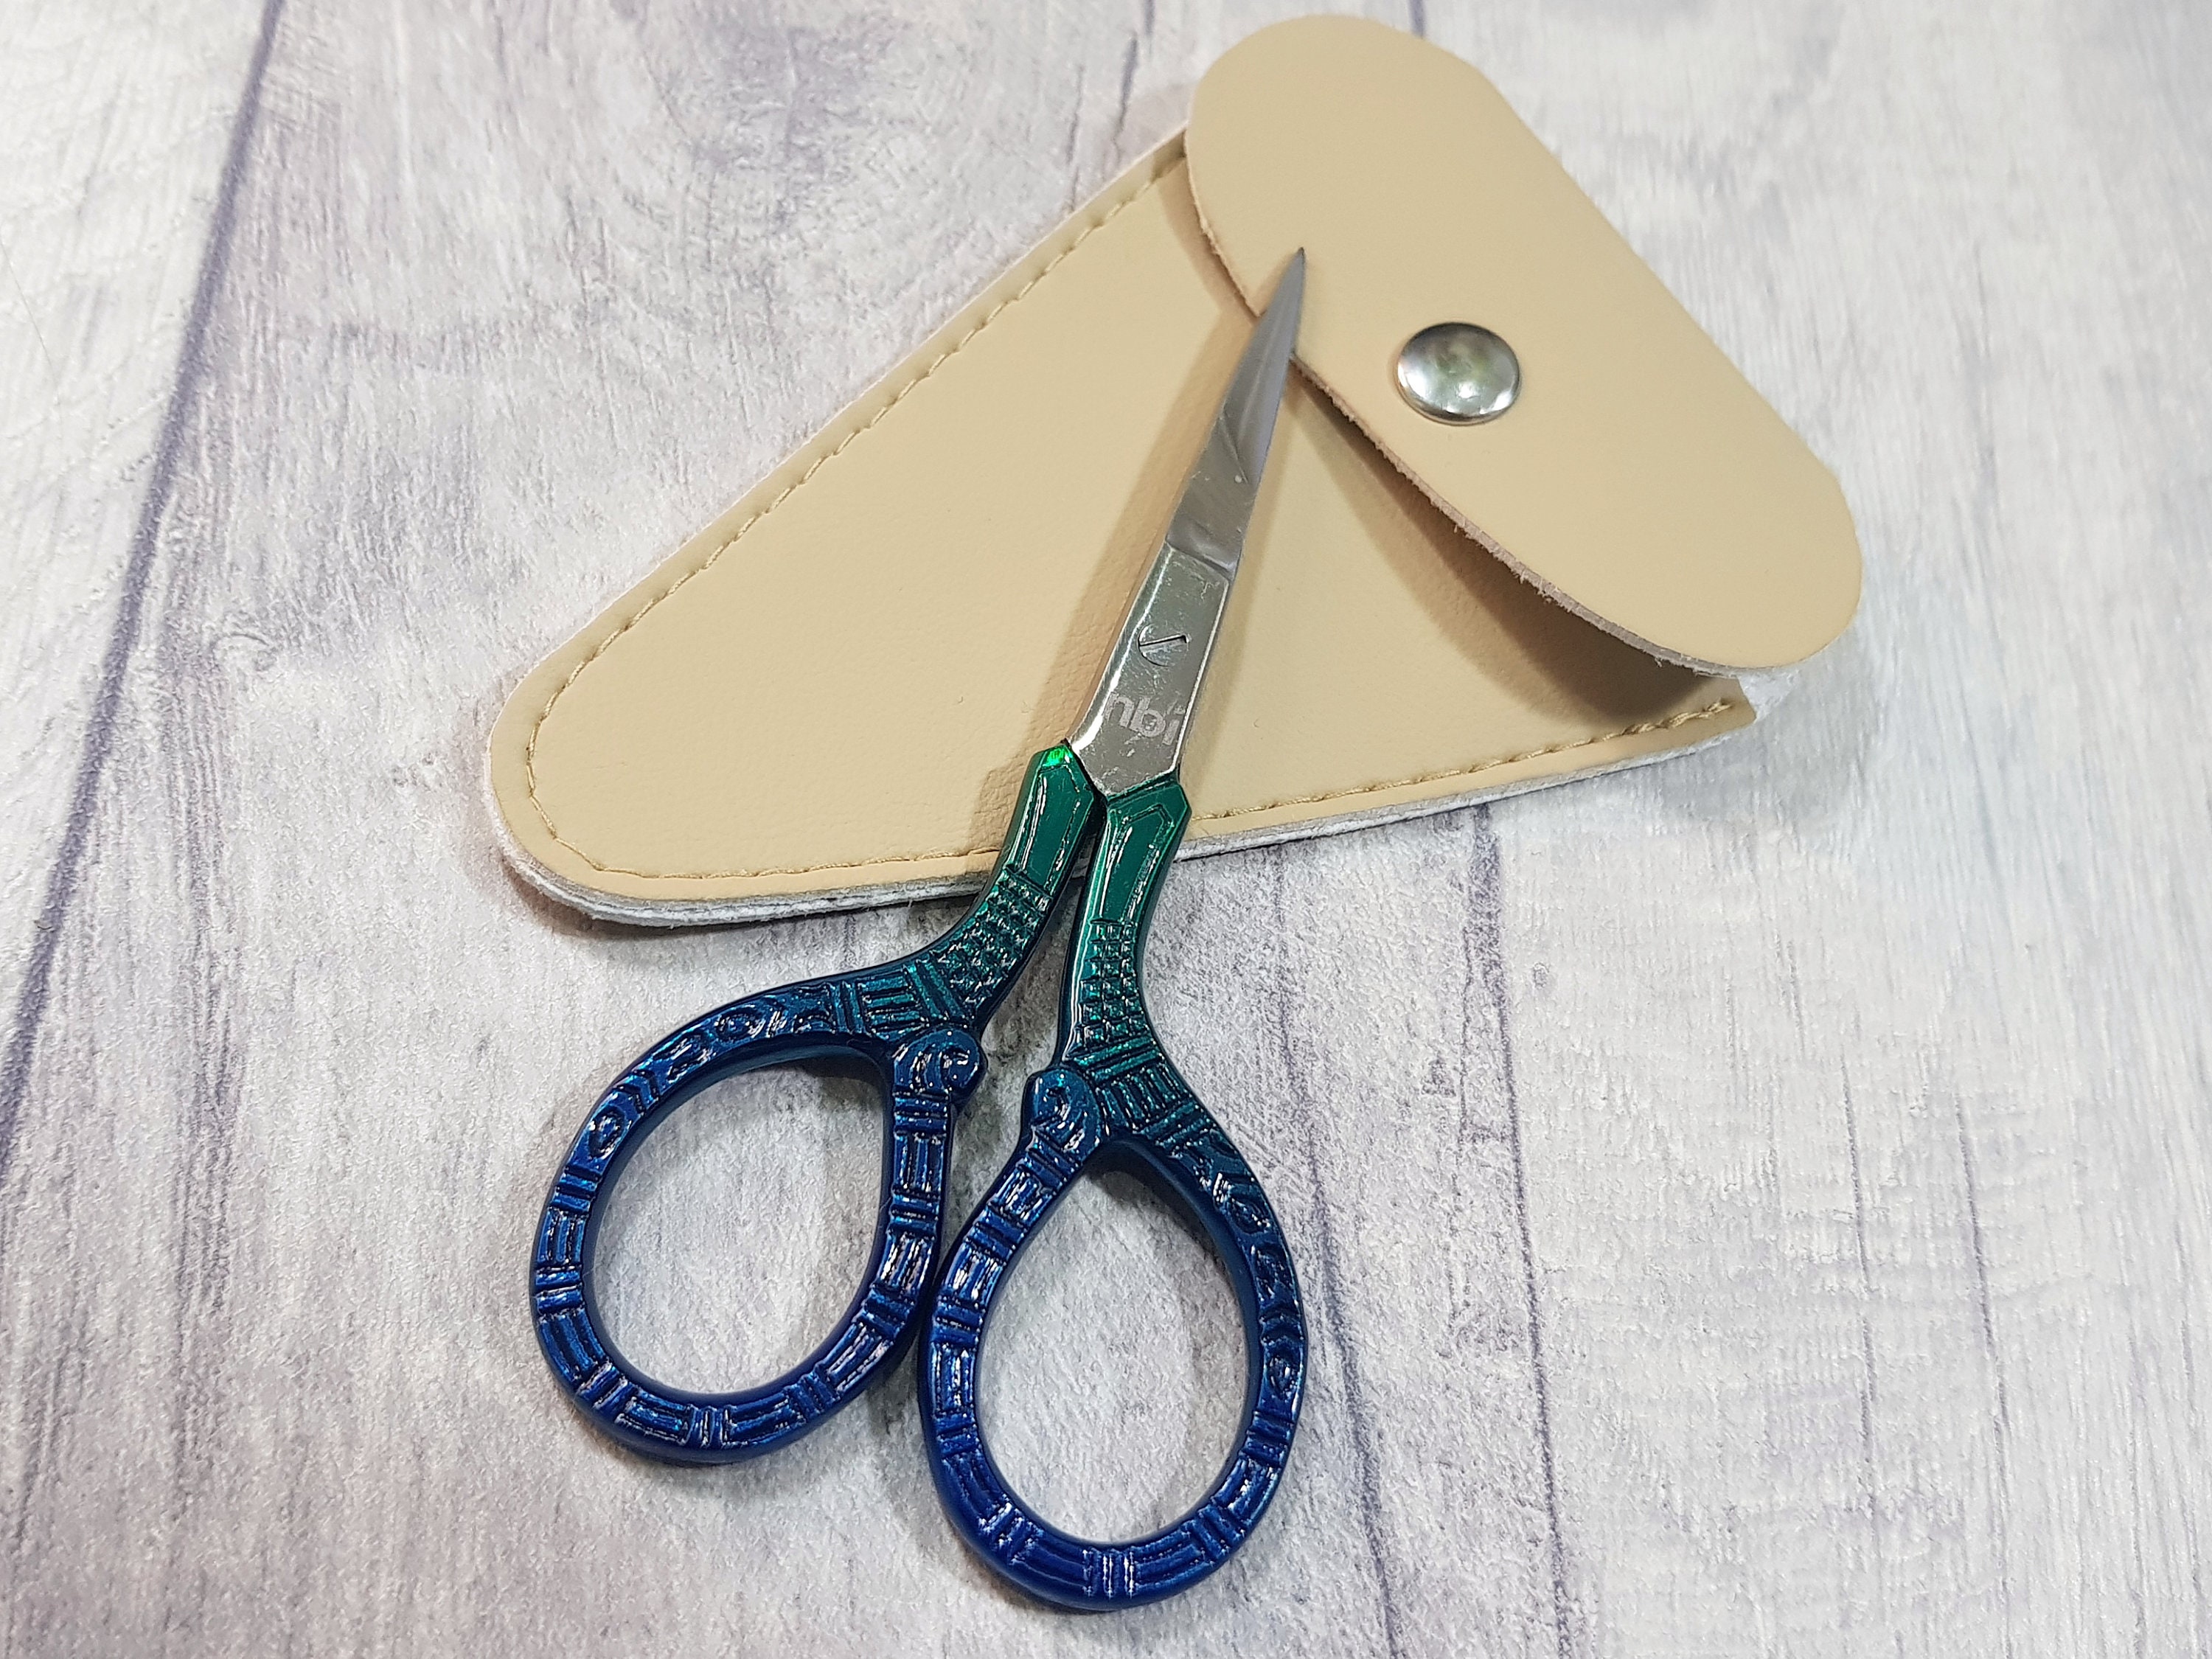 Embroidery Scissors, Vintage Scissors, Antique Scissors,Thread  Scissor,Tailor’s Scissors,Retro Diy Craft Scissors,Sewing Scissor